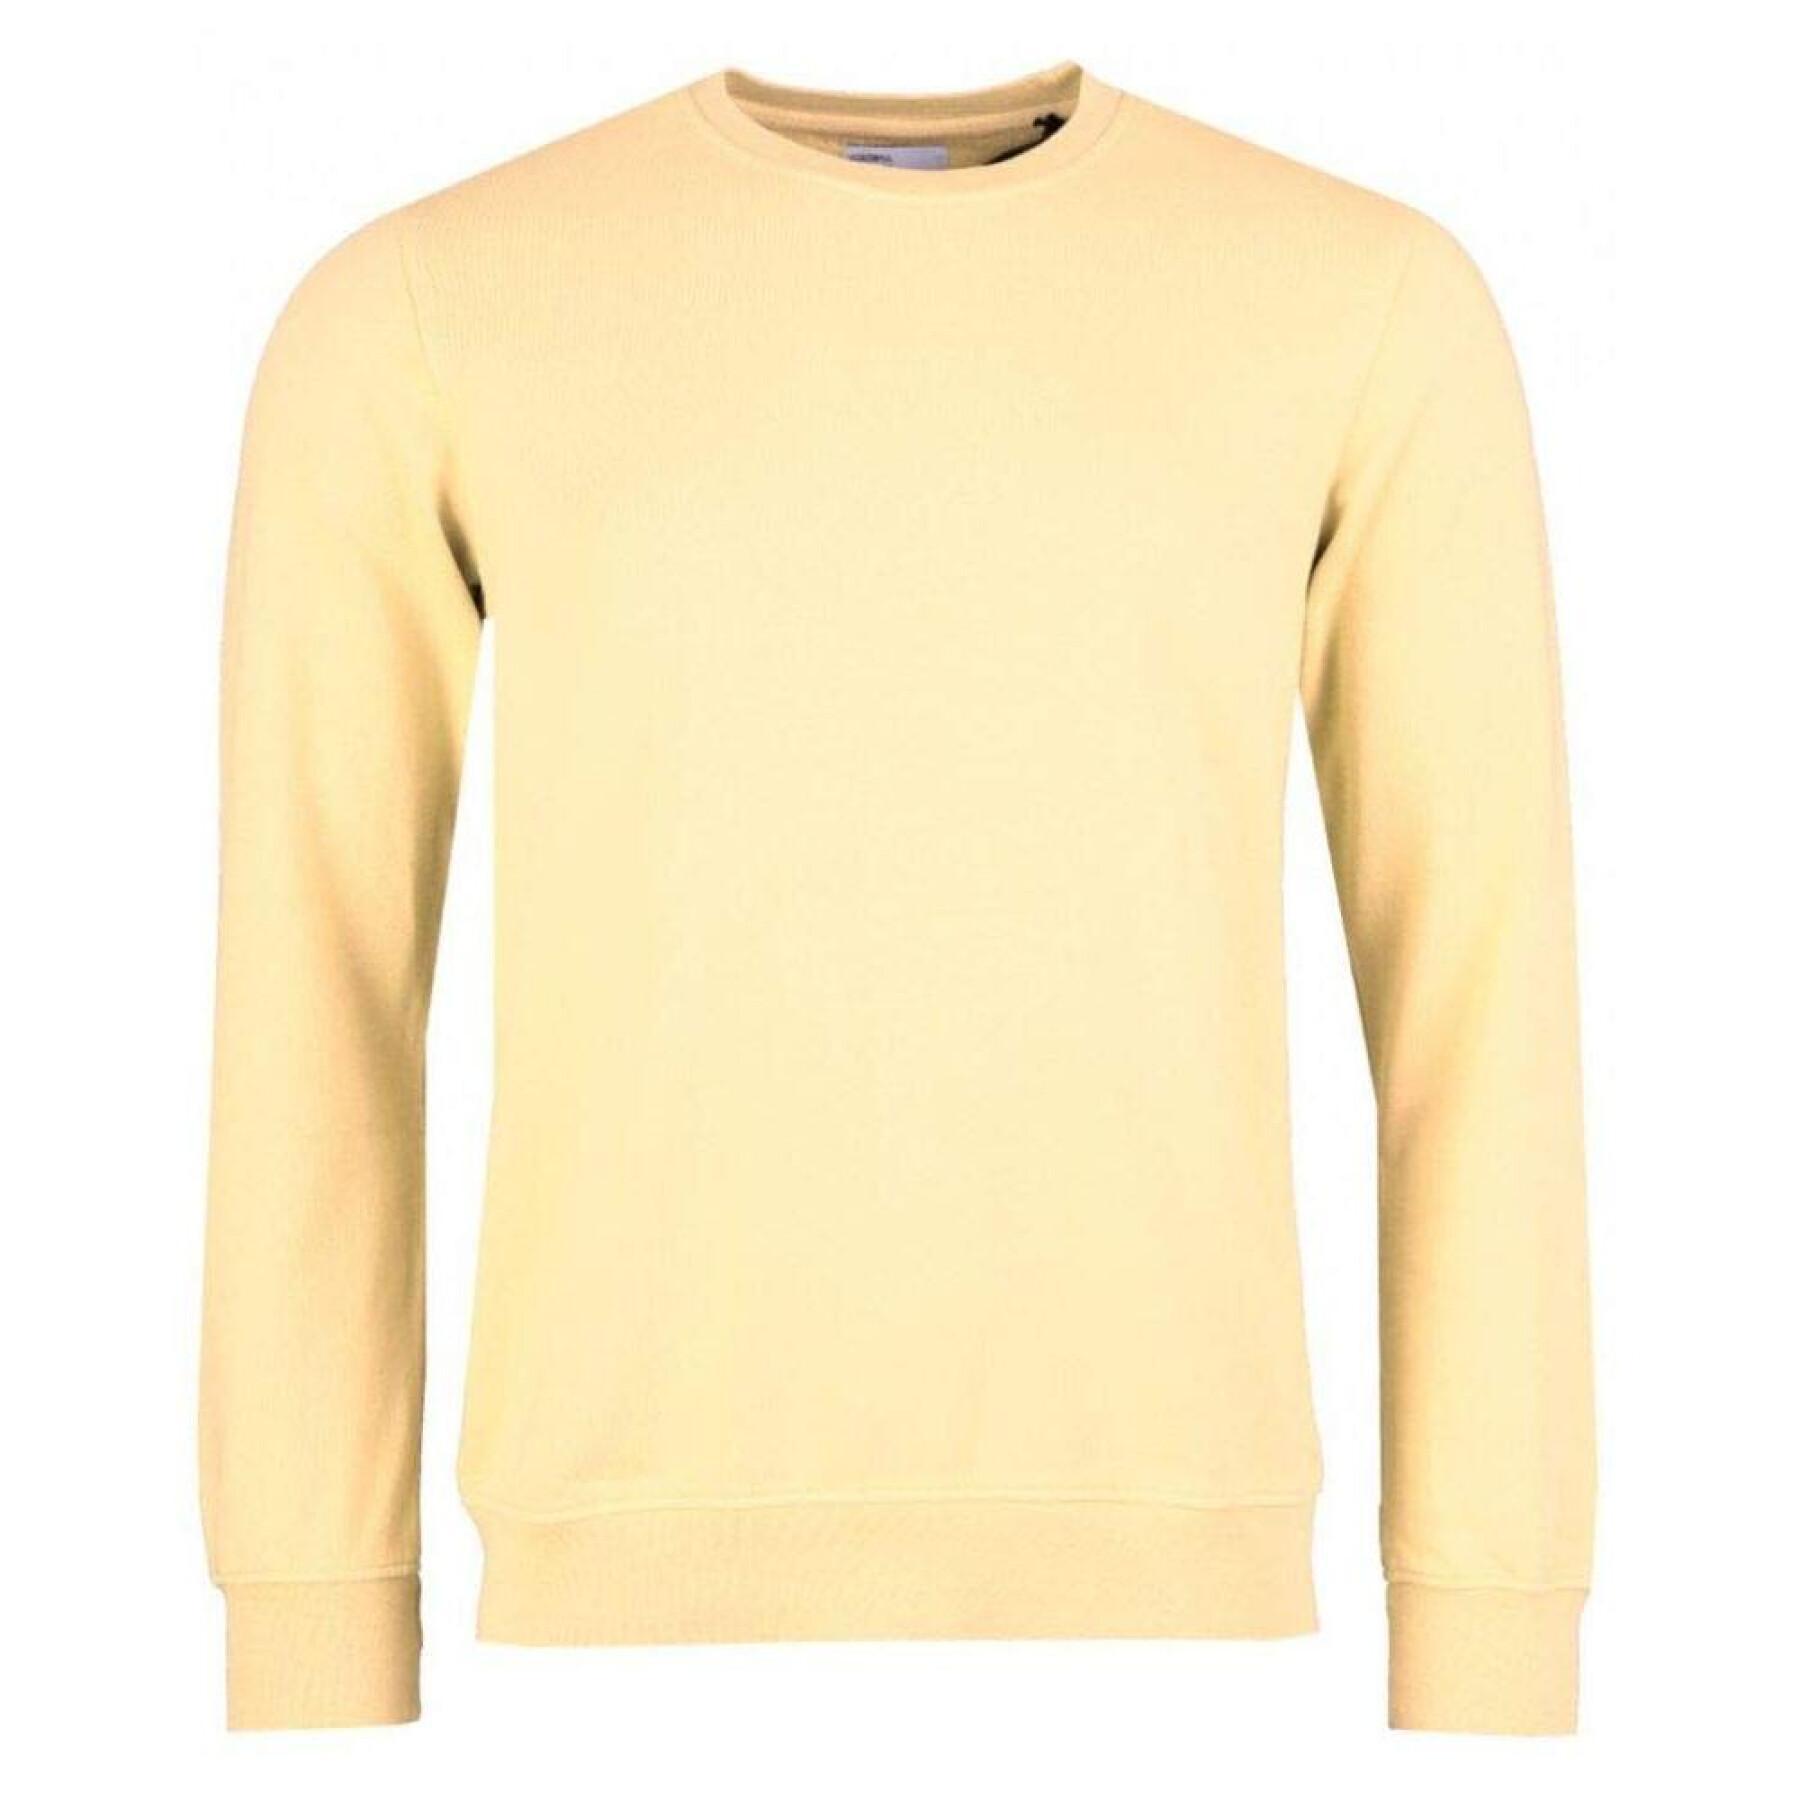 Bluza z okrągłym dekoltem Colorful Standard Classic Organic soft yellow